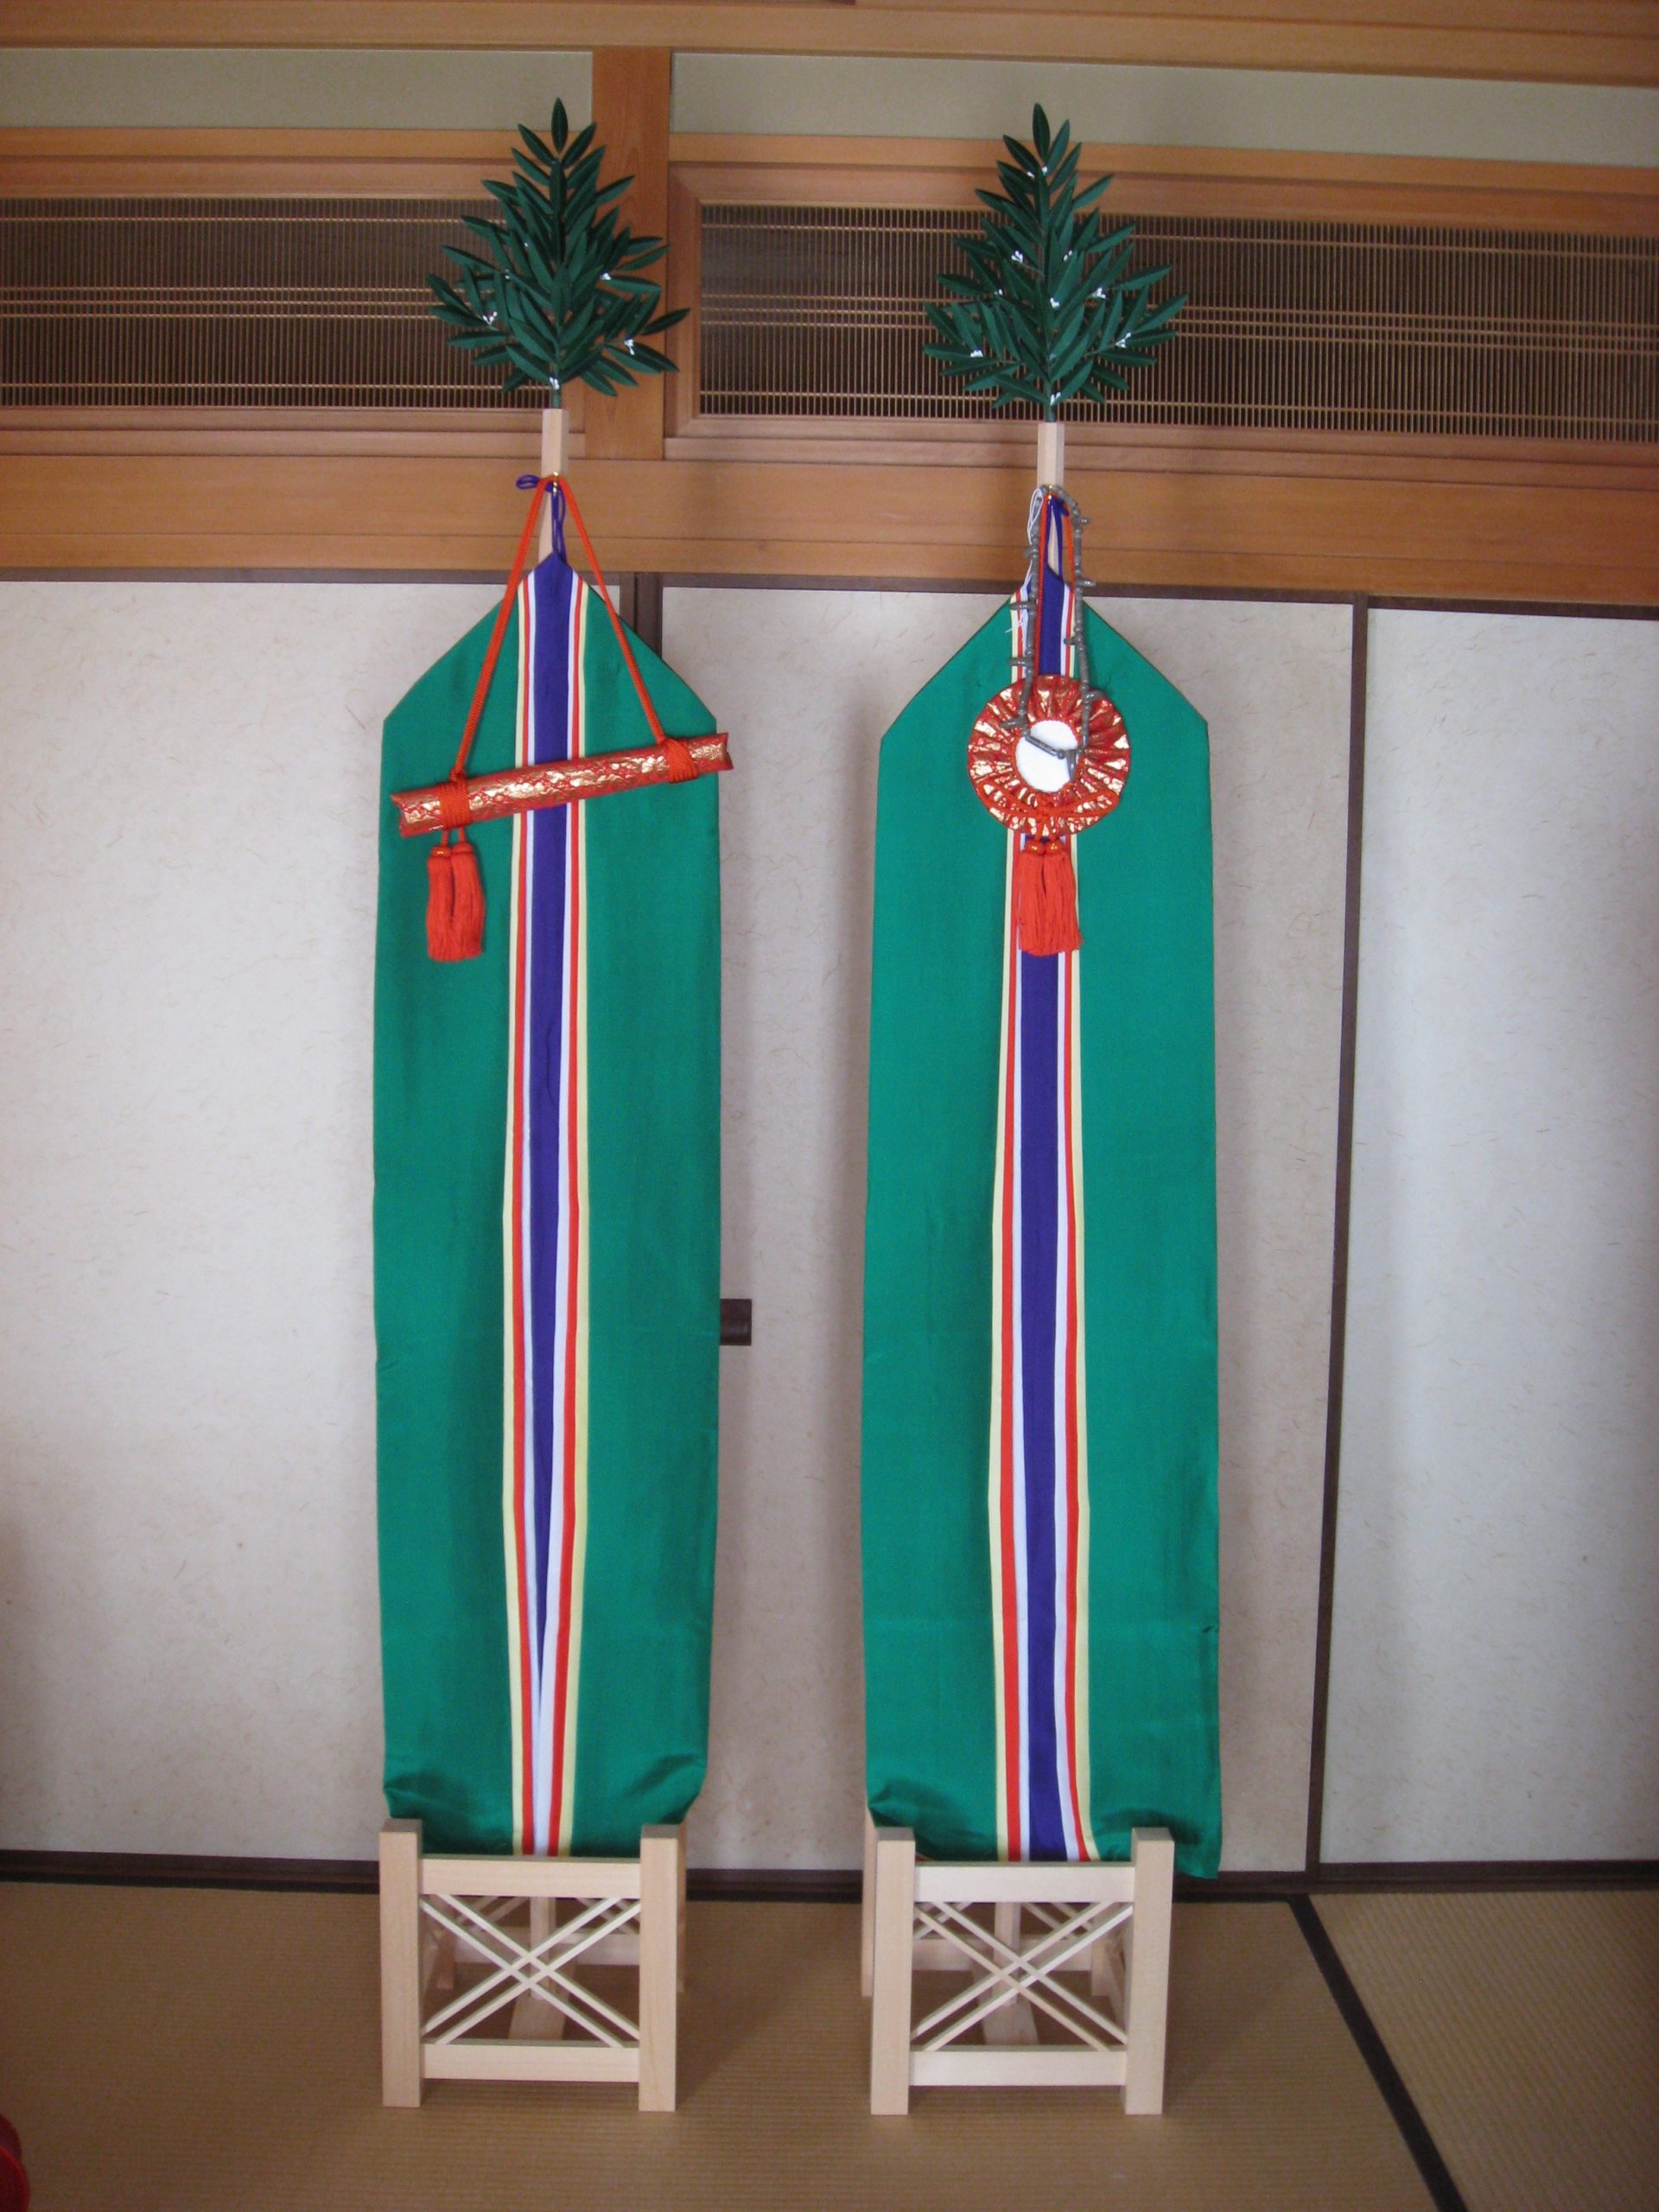 三種神器 標準対応品 布寸7.5尺(総高335cm)用 神具 神社 祭典